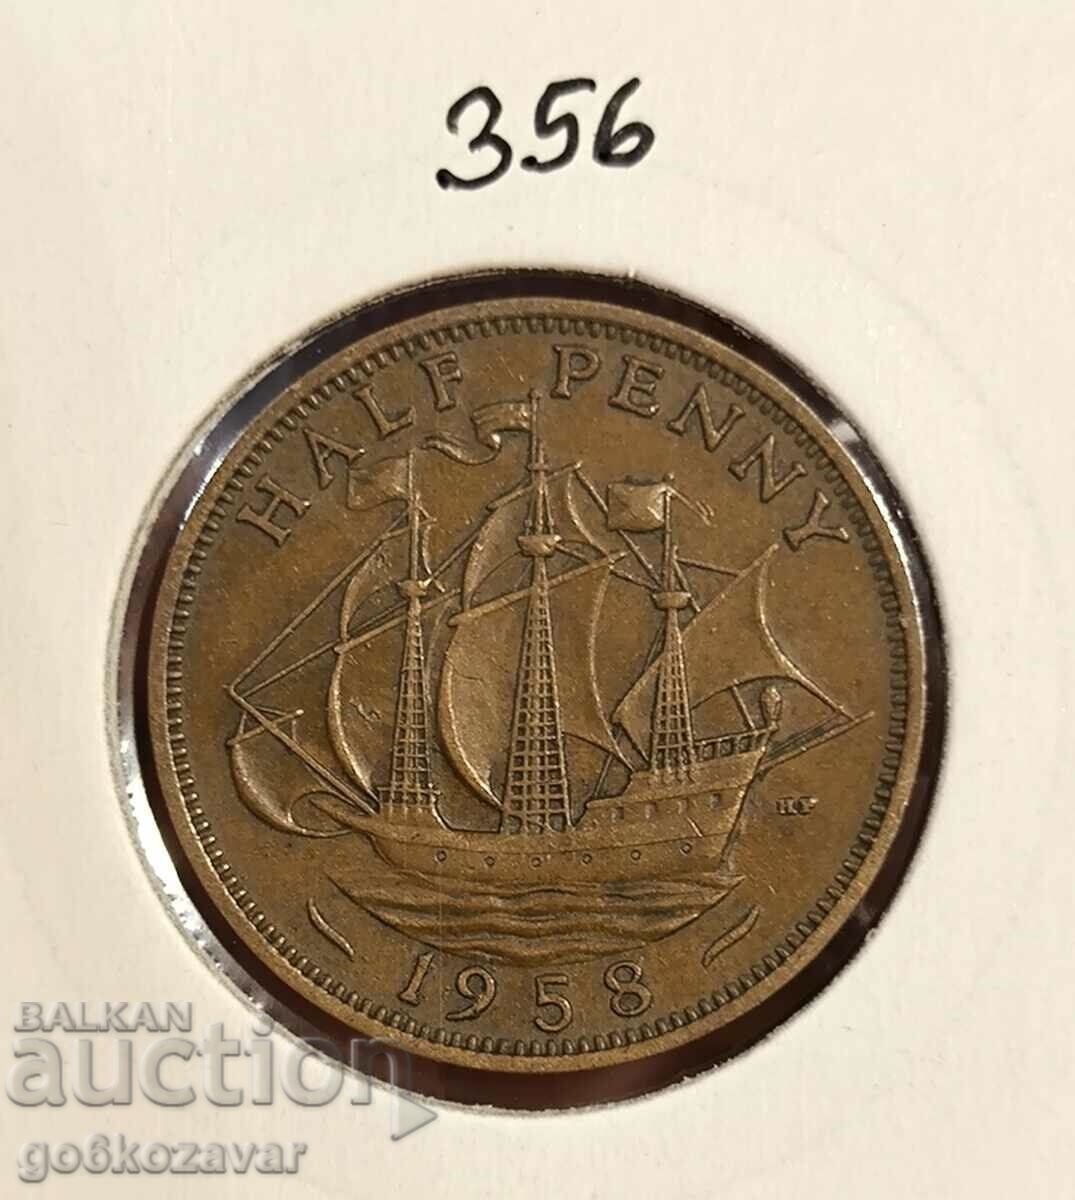 Marea Britanie 1/2 penny 1958